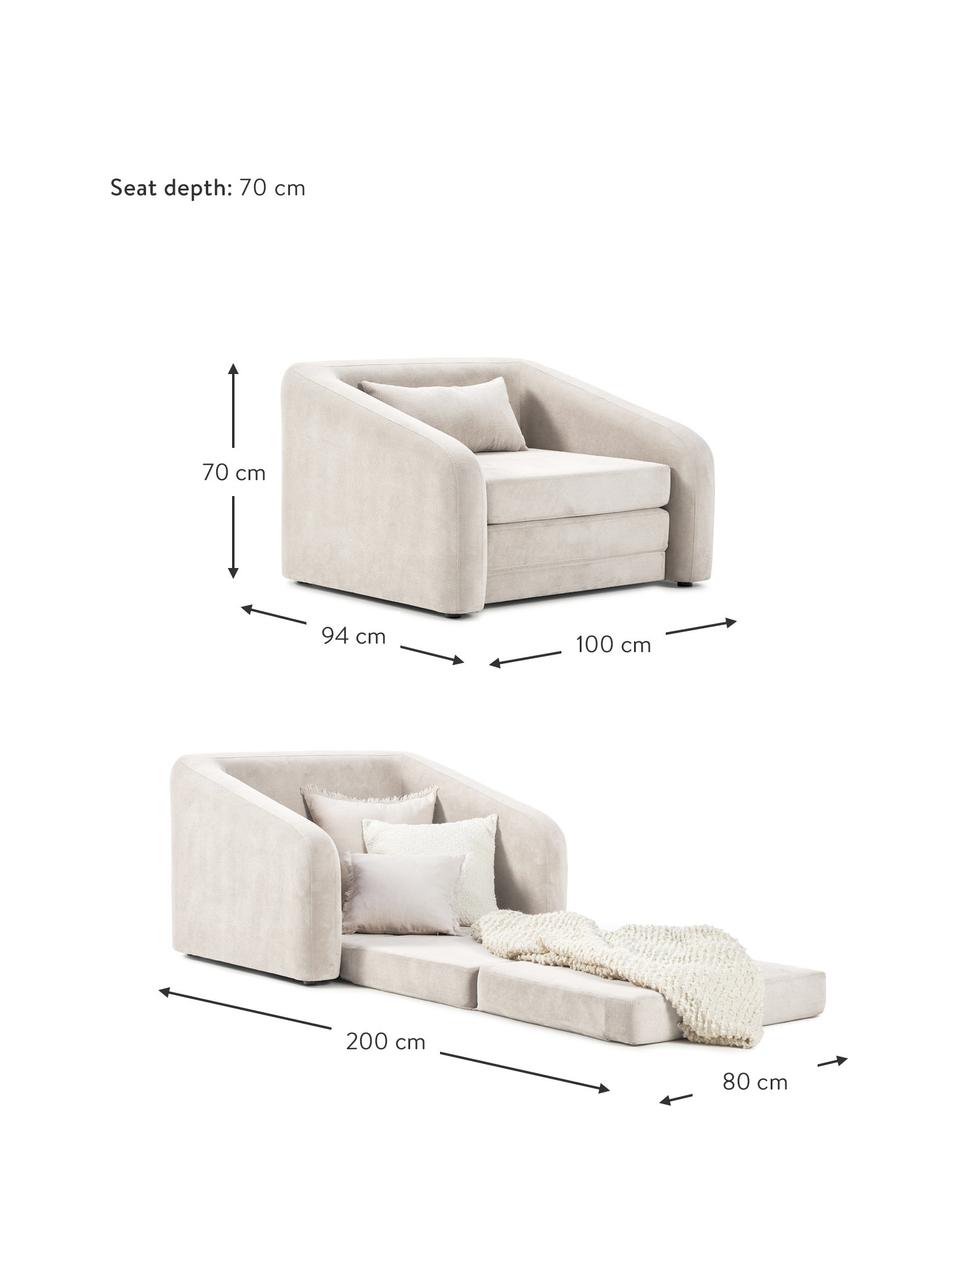 Fotel rozkładany Eliot, Tapicerka: 88% poliester, 12% nylon , Nogi: tworzywo sztuczne, Kremowobiała tkanina, S 100 x W 70 cm